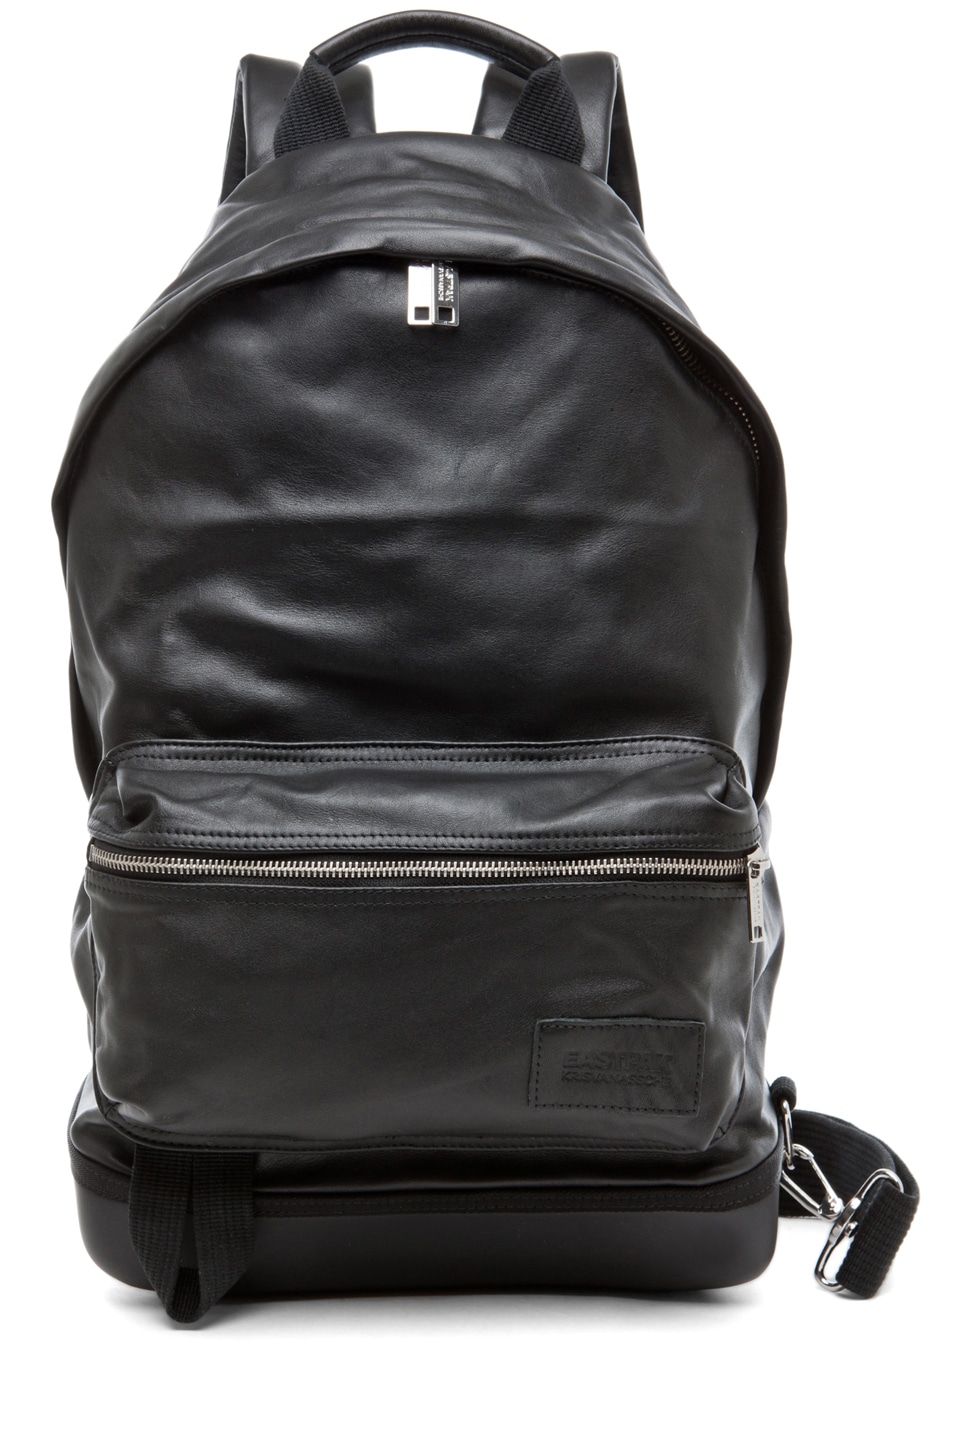 Image 1 of Kris Van Assche x Eastpack Backpack in Black Leather